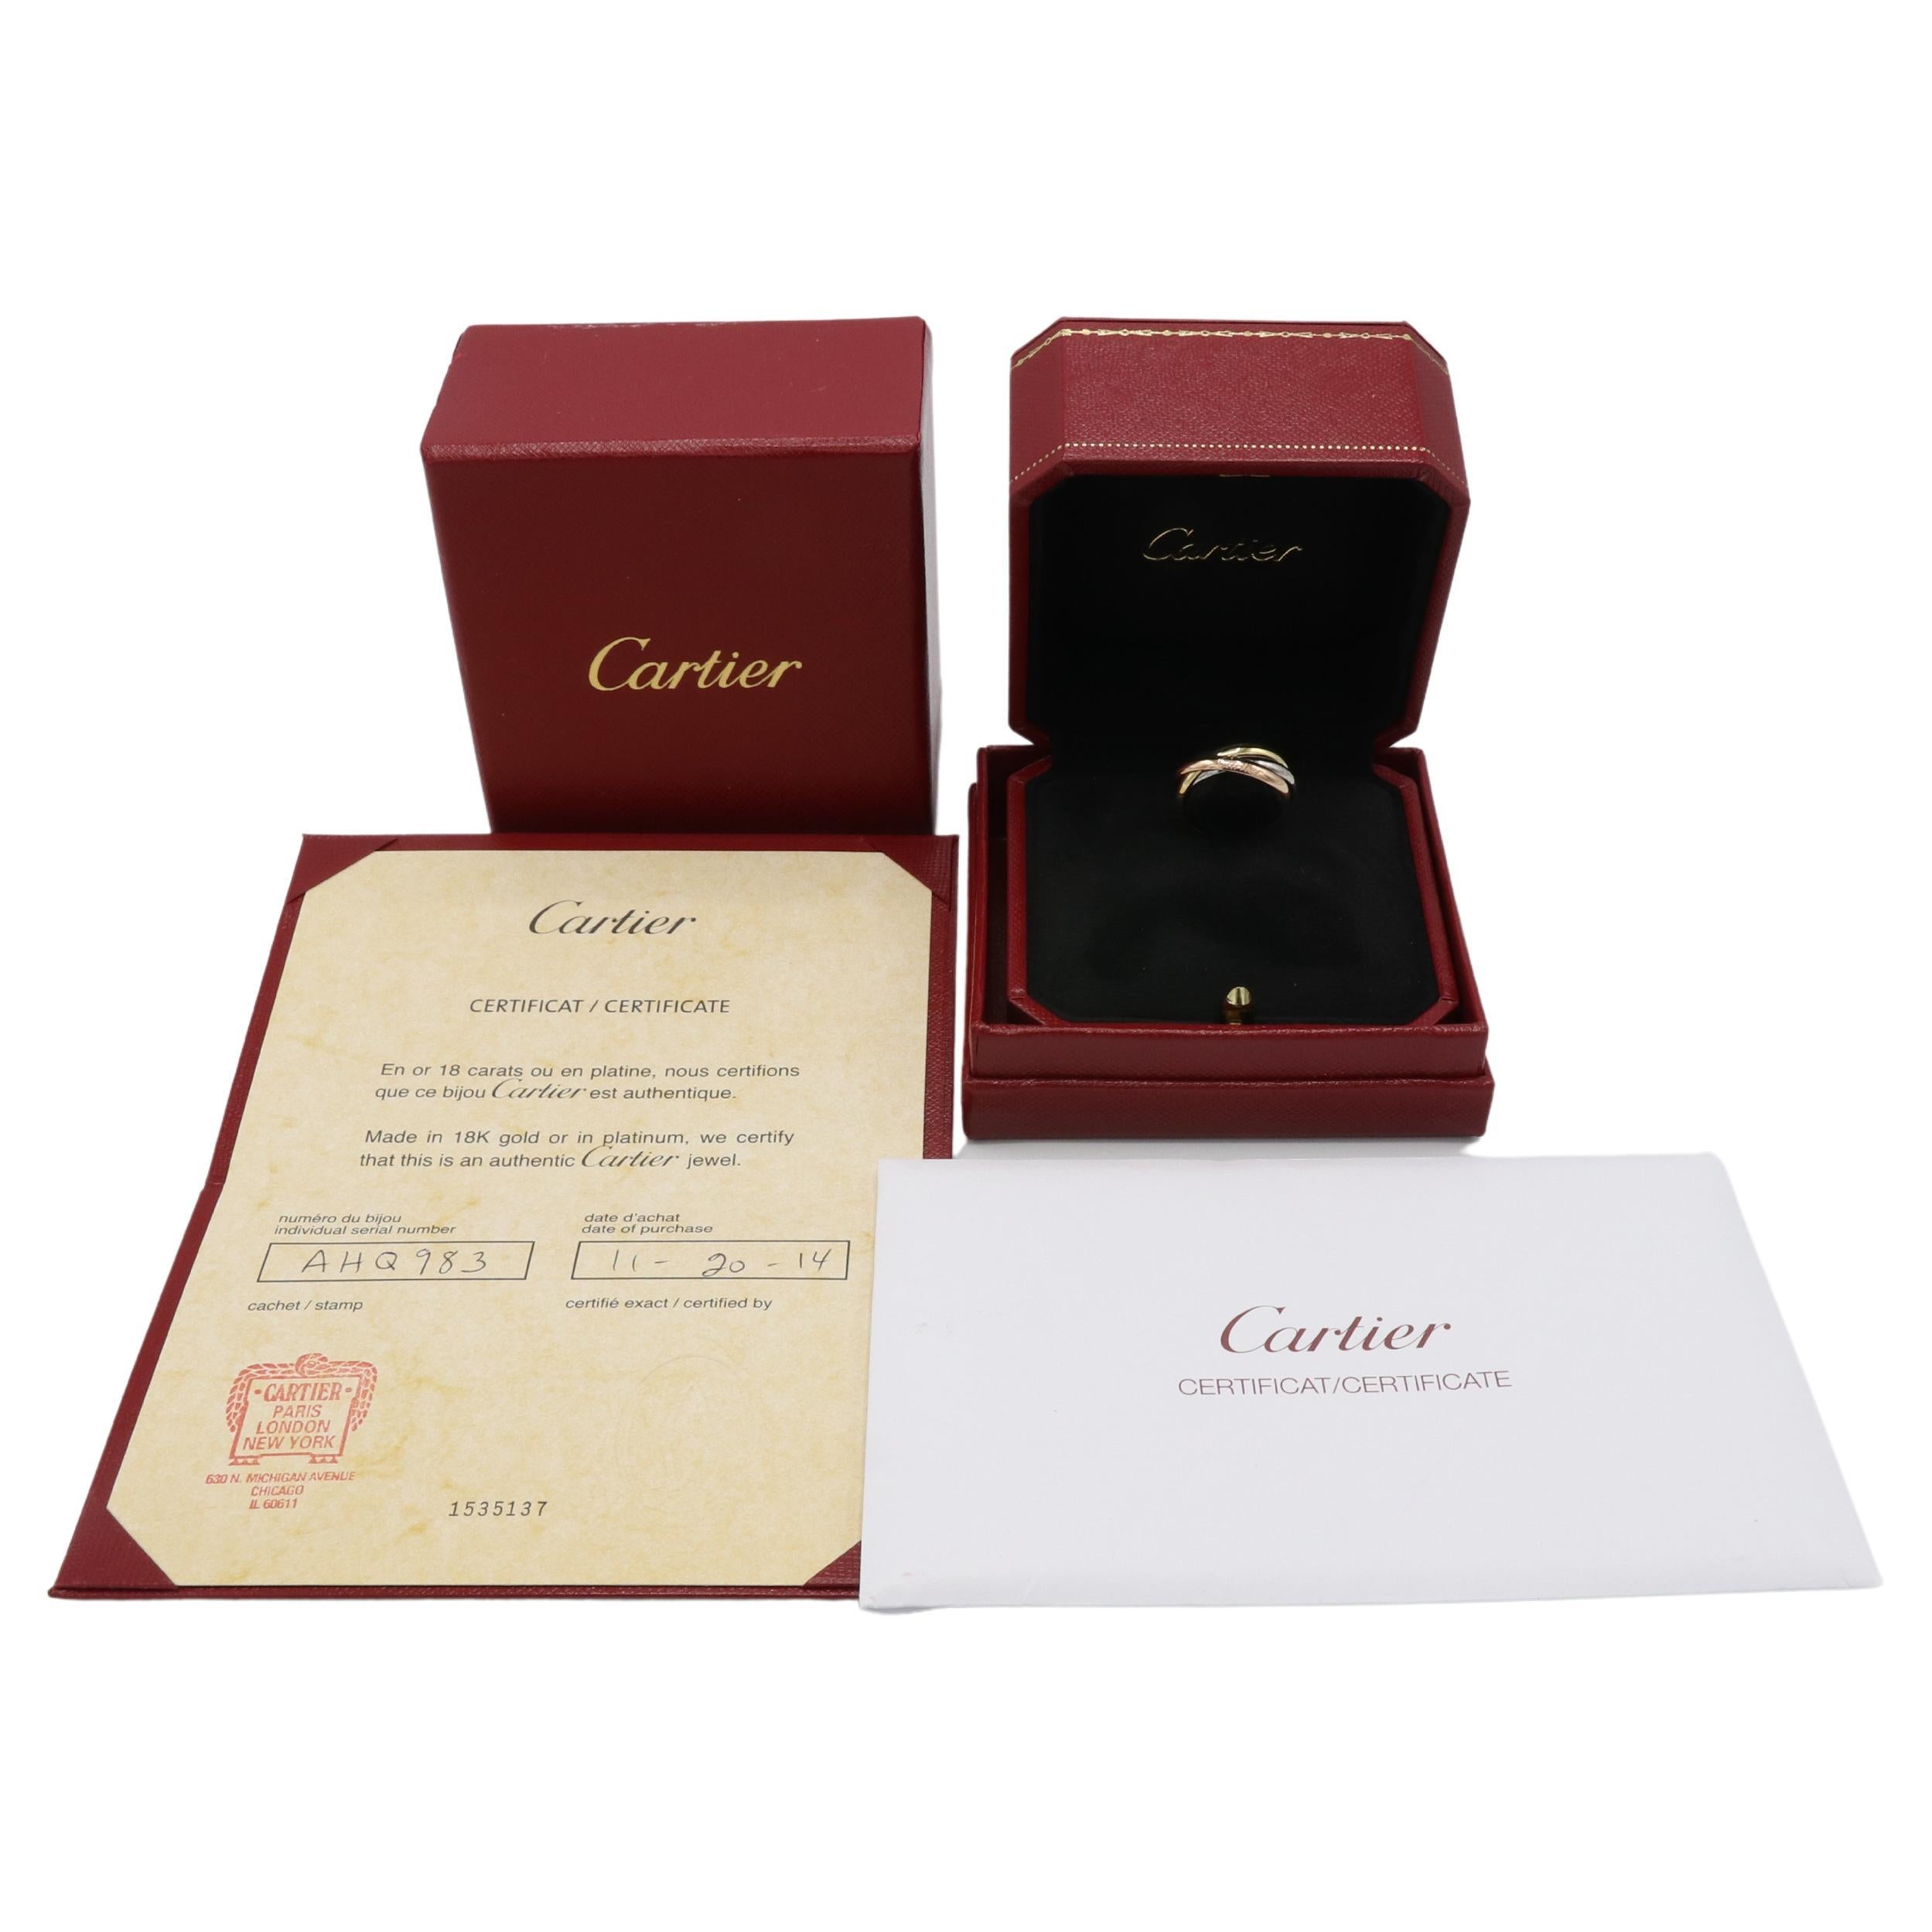 Cartier Classic Tri-Color Trinity Rolling Band Ring Box & Papiere
Metall: Rose, gelbes Weißgold 18k
Gewicht: 5.34 Gramm
Größe: 54 (6.75)
Einzelhandel: $1.960 USD
Anmerkung: Box & Papiere
